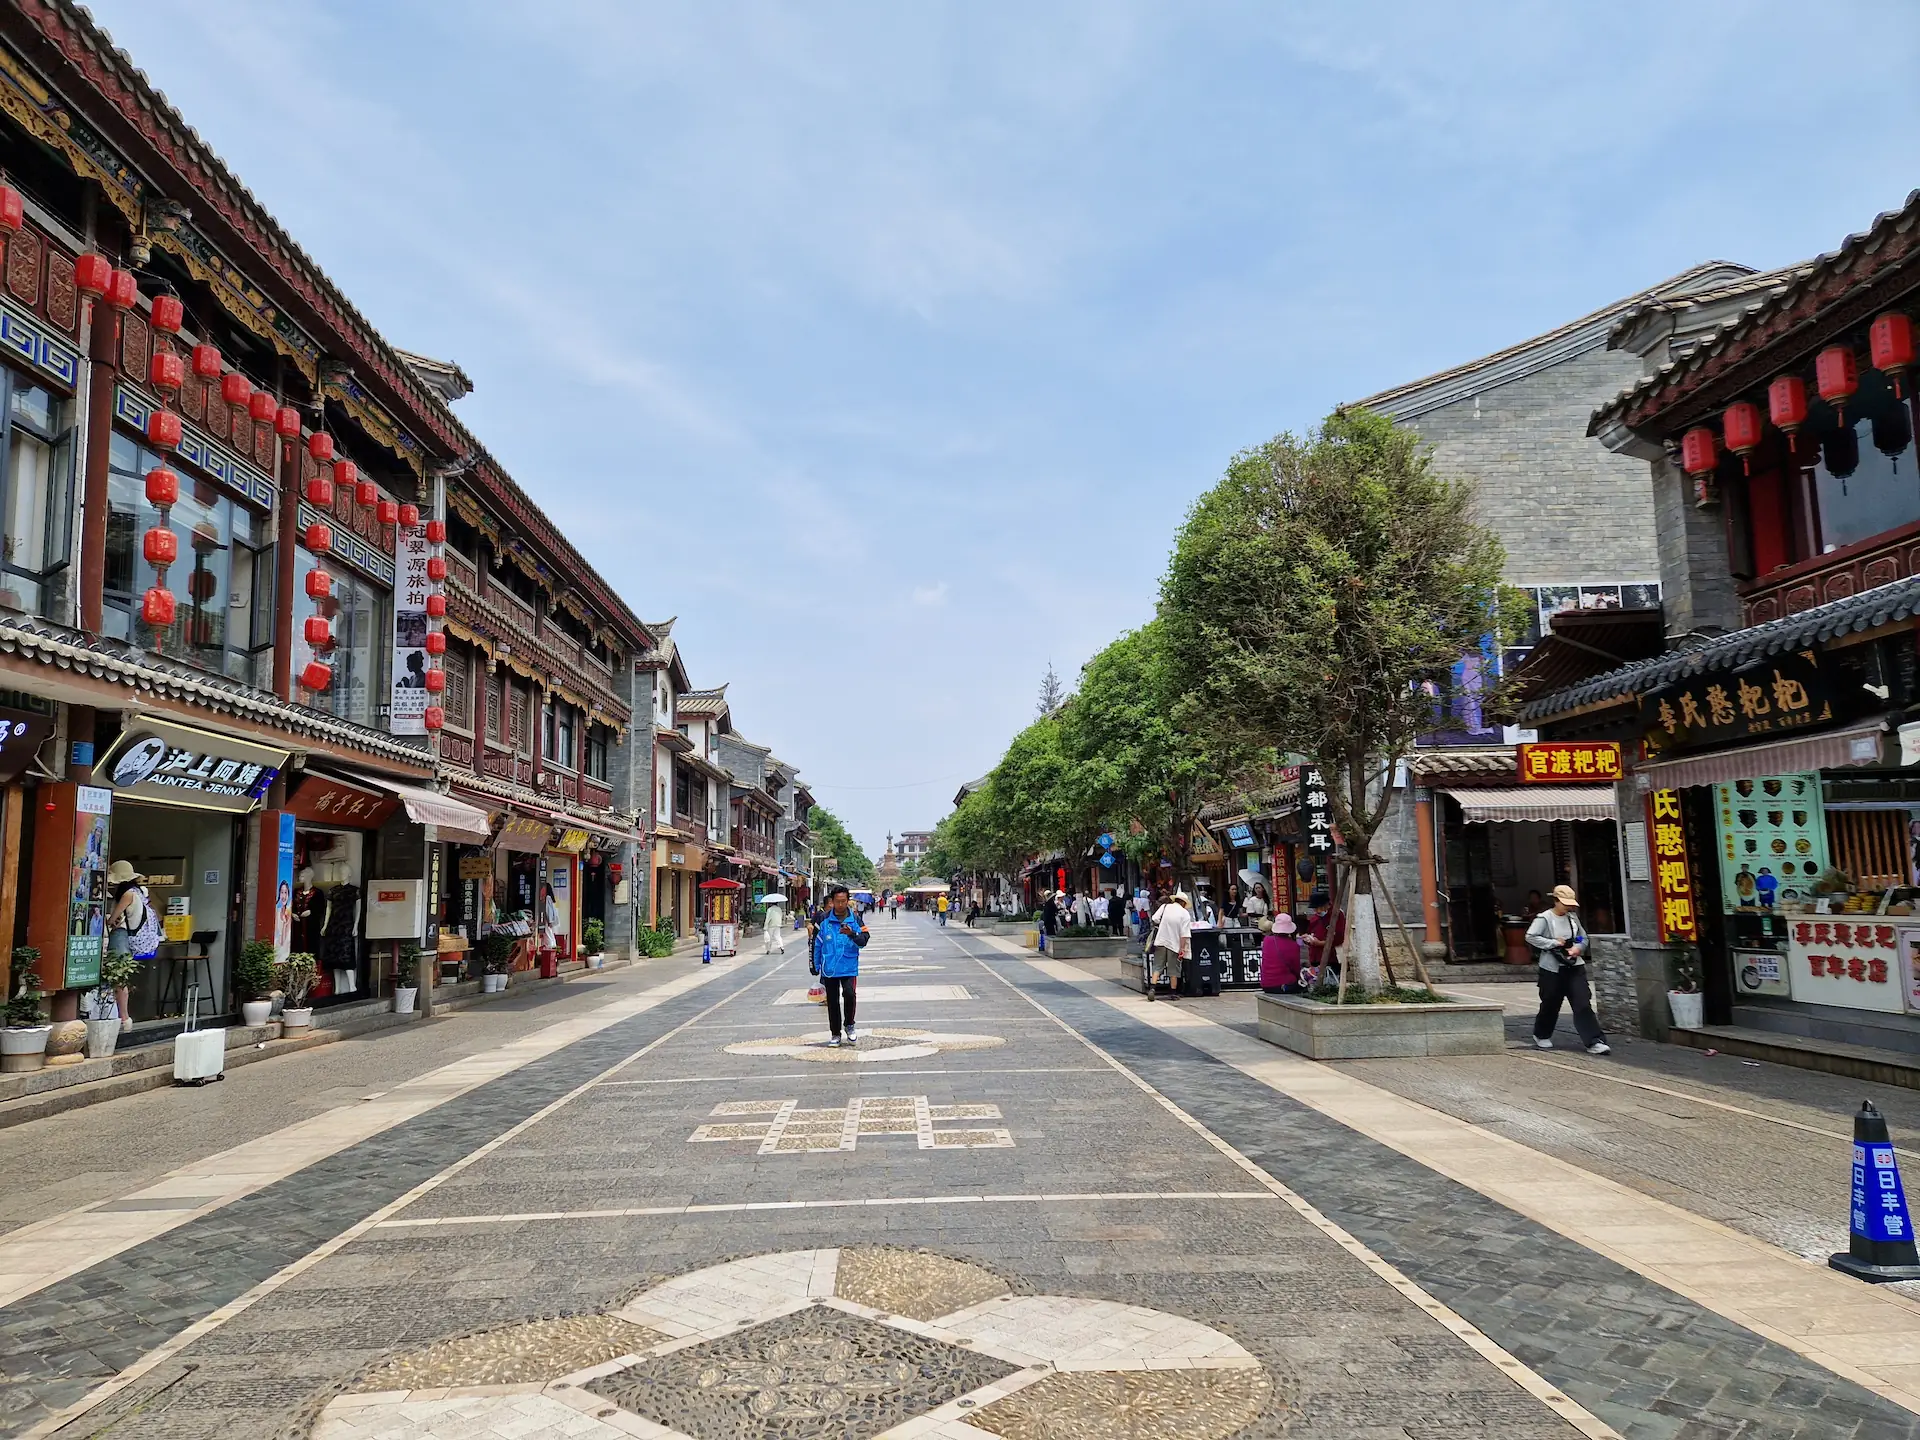 La grande rue commerciale de Guandu : très propre, vieux bâtiments décorés de lampions, restaurants et autres commerces.